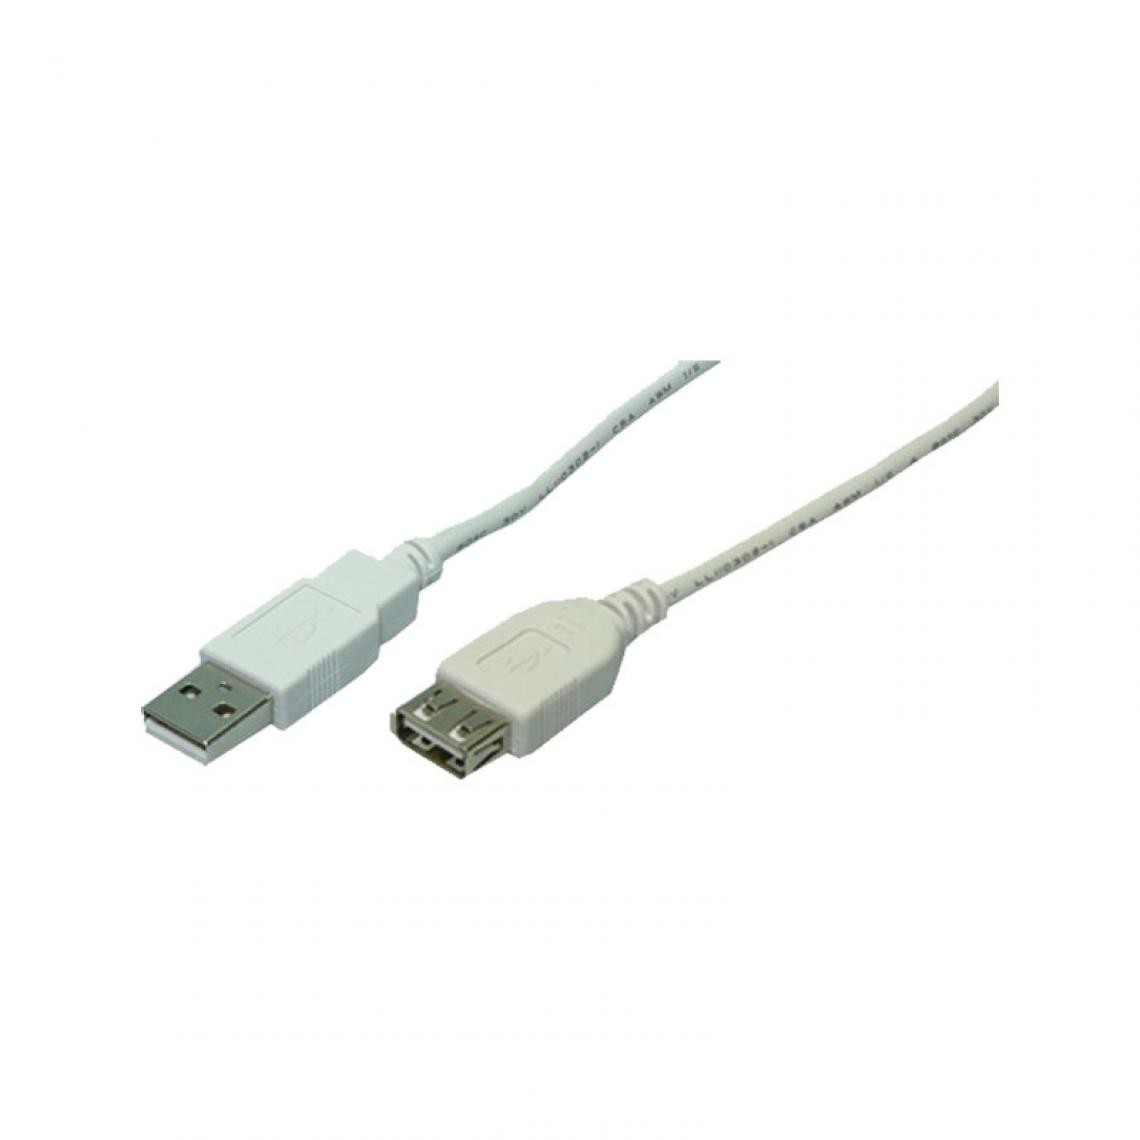 Logilink - LogiLink Rallonge USB 2.0, gris, 5,0 m () - Hub